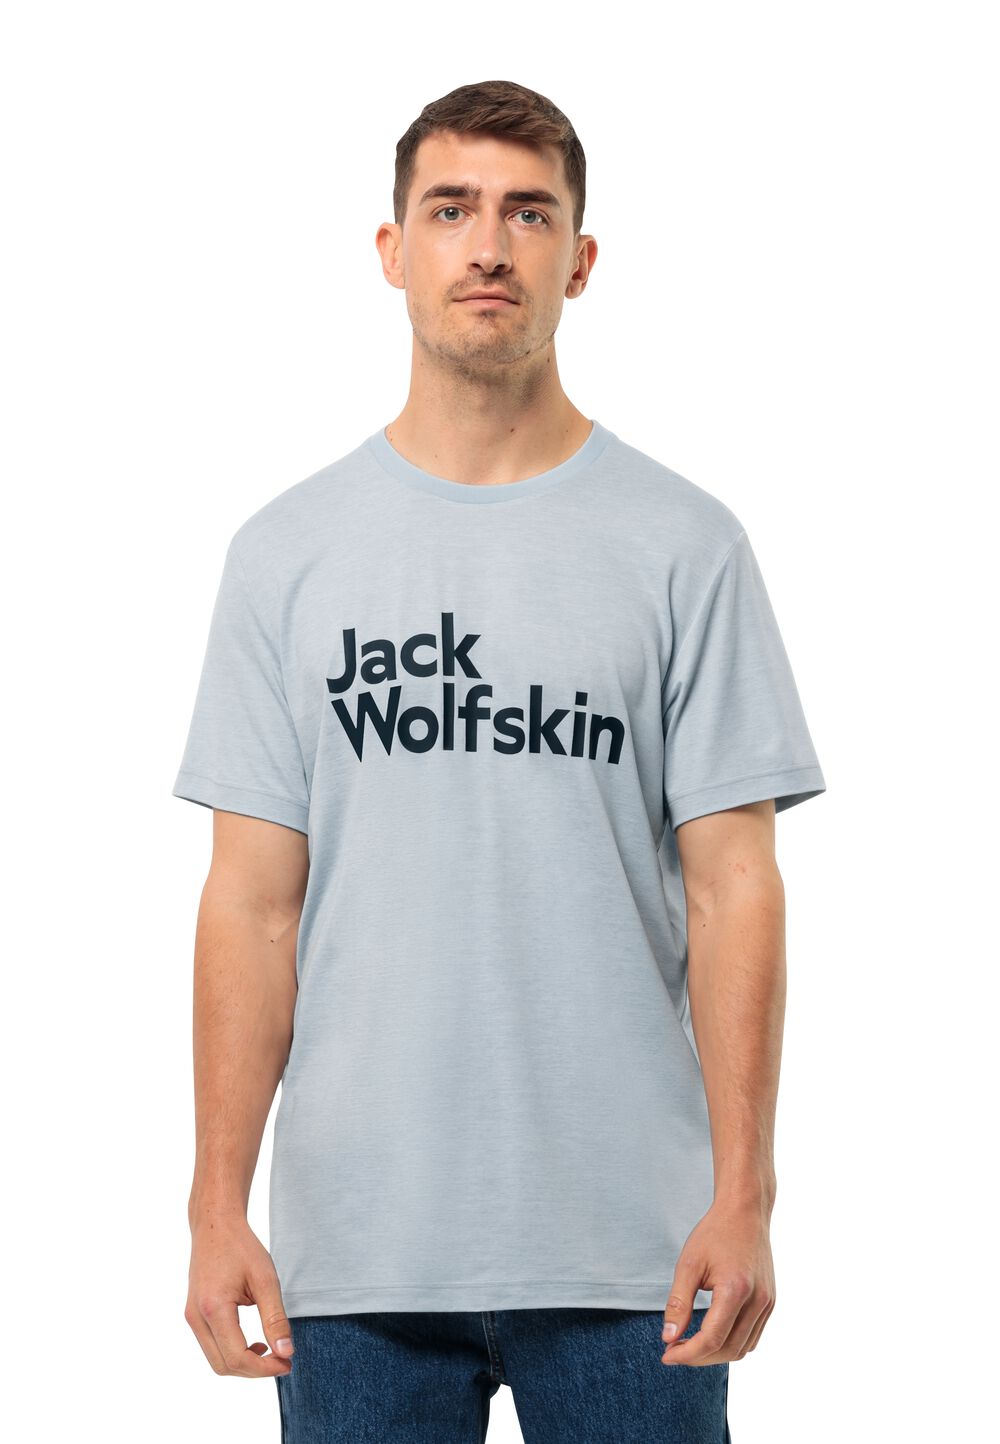 Jack Wolfskin Brand T-Shirt Men Functioneel shirt Heren S soft blue soft blue